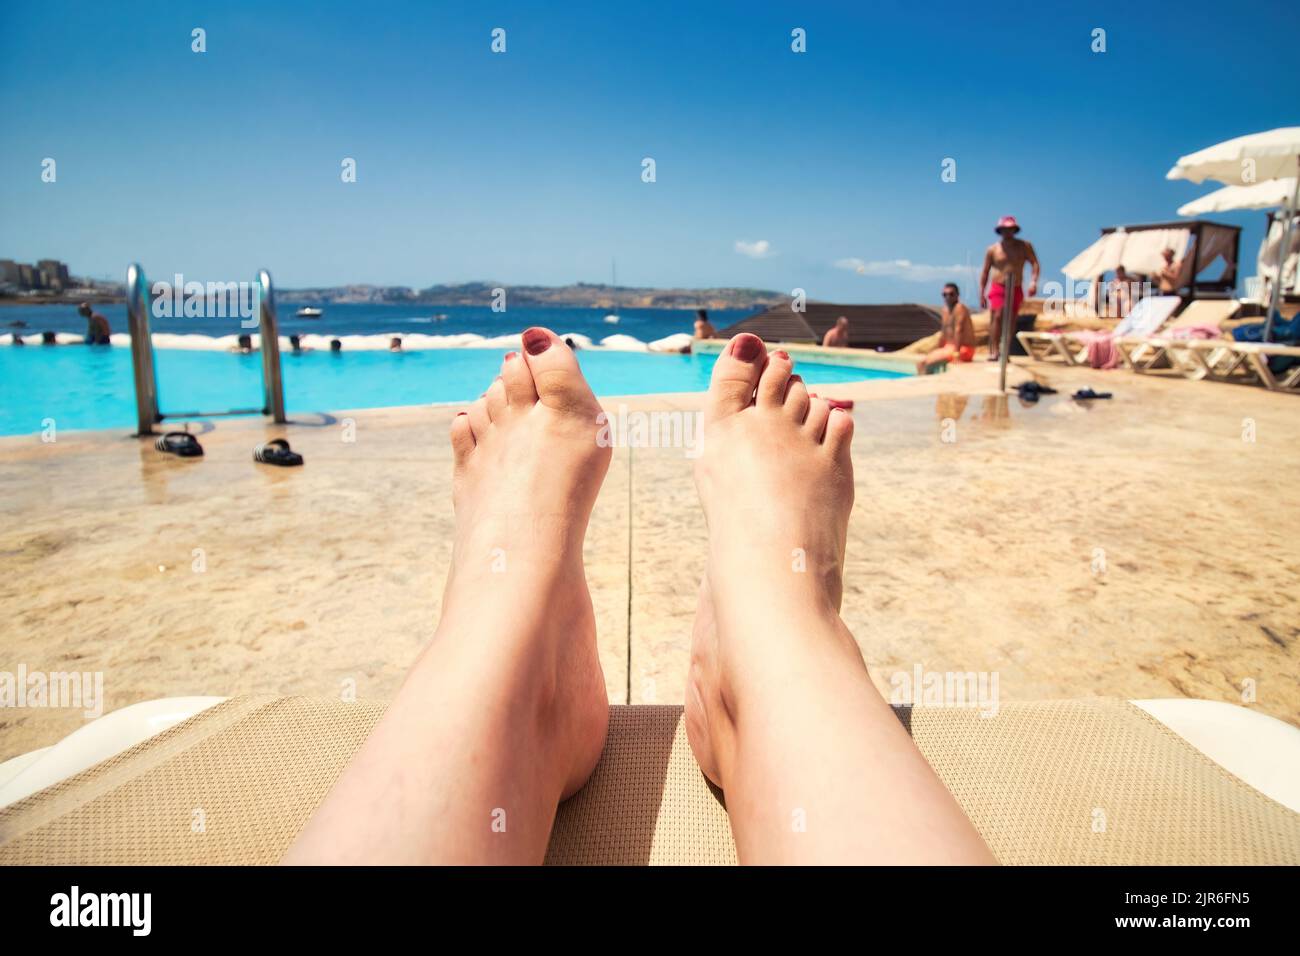 Aus der Sicht der ersten Person von einer Frau, die entspannt auf einer Sonnenliege am Pool liegt und auf den Pool blickt, mit Menschen im Hintergrund und Copy-SP Stockfoto